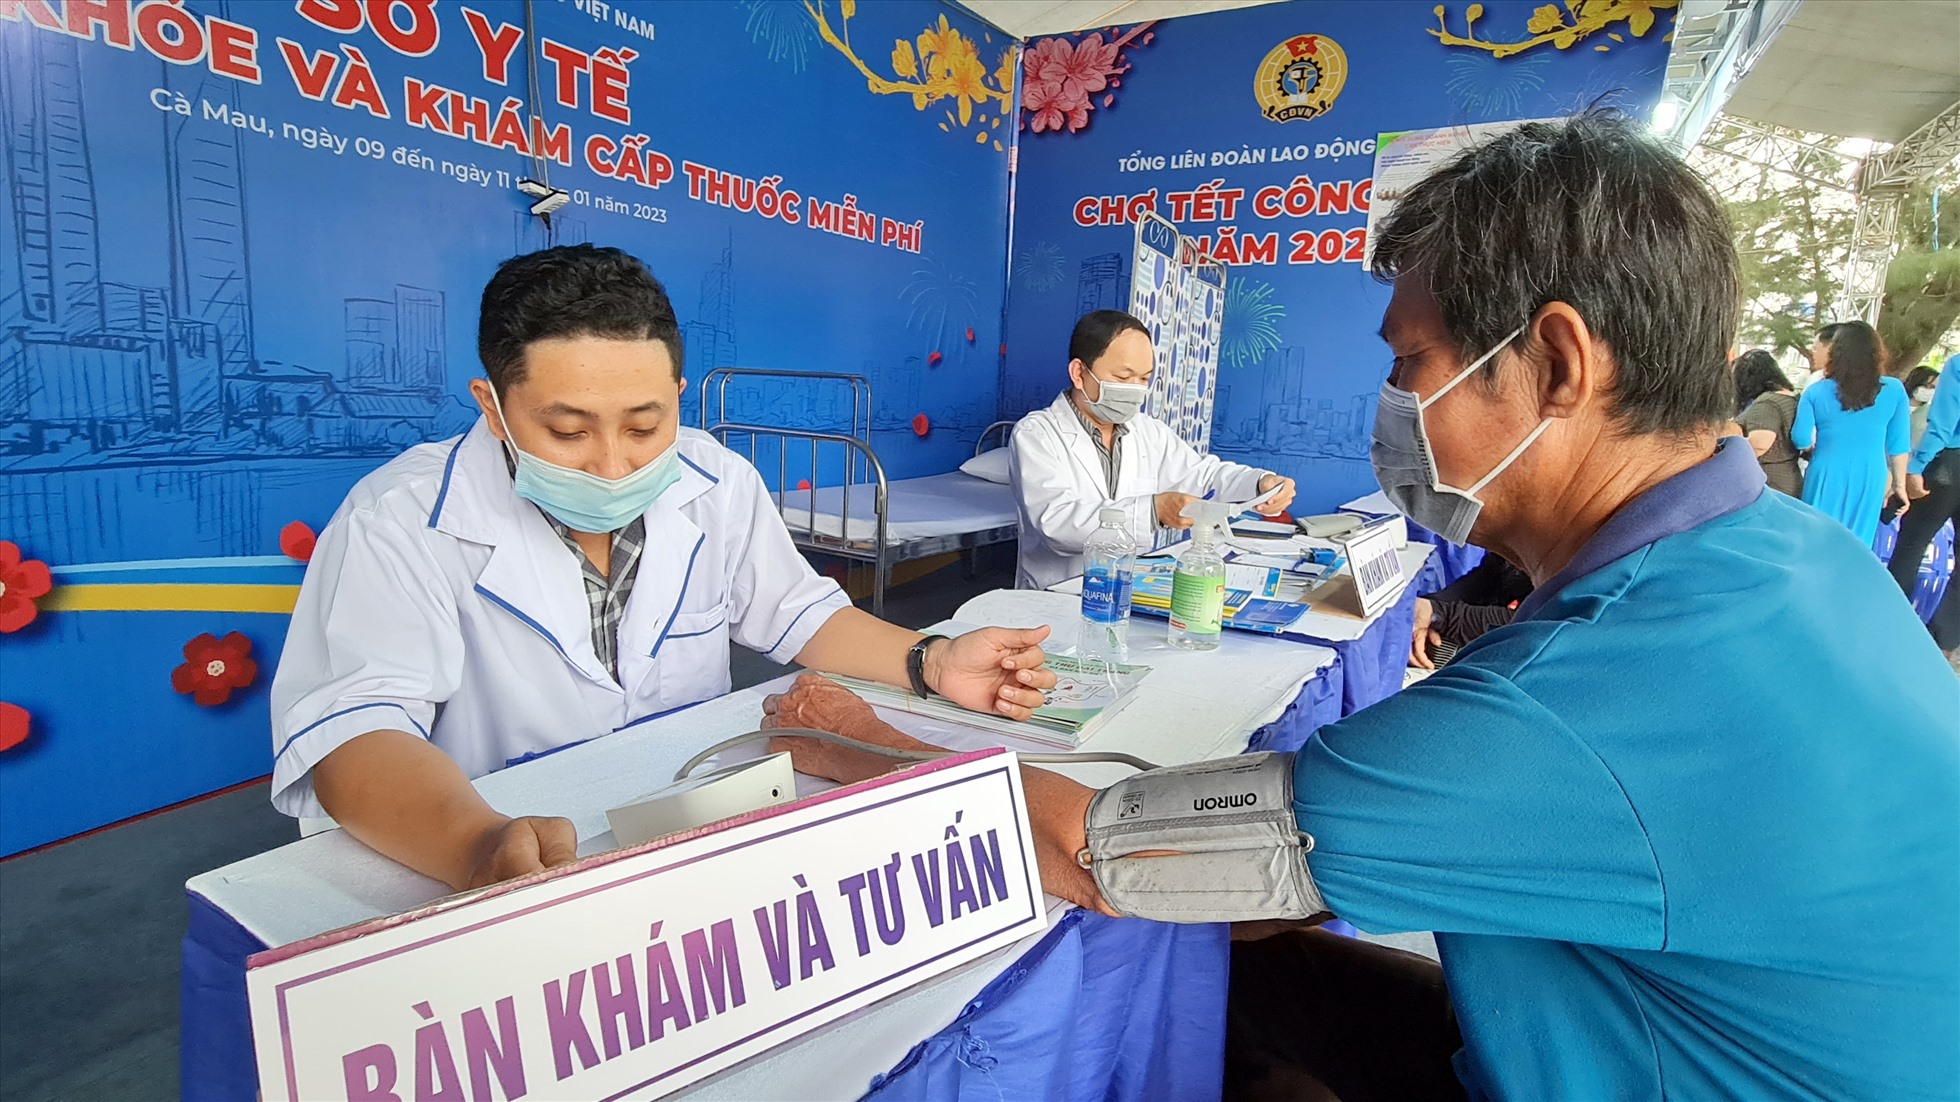 Tại tỉnh Cà Mau, Chợ Tết Công đoàn còn tổ chức khám bệnh cấp thuốc miễn phí cho công nhân.